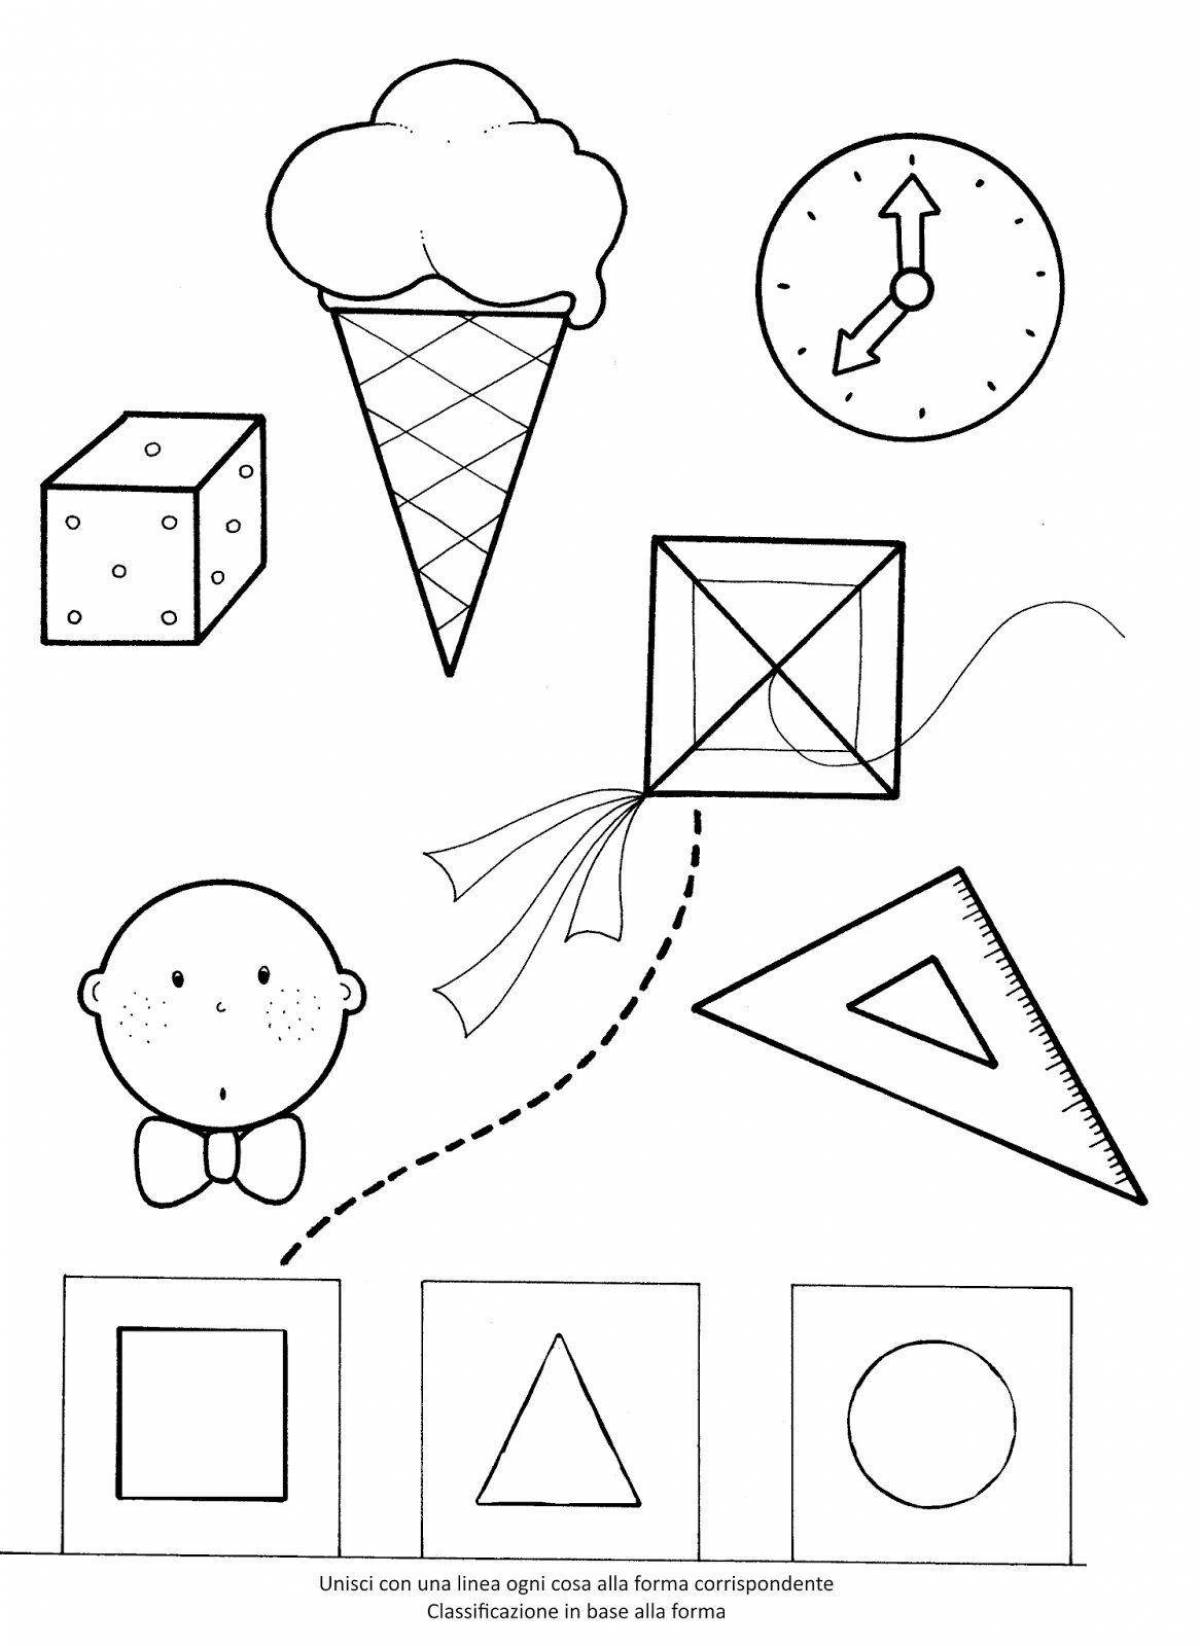 Геометрические фигуры для дошкольников #5